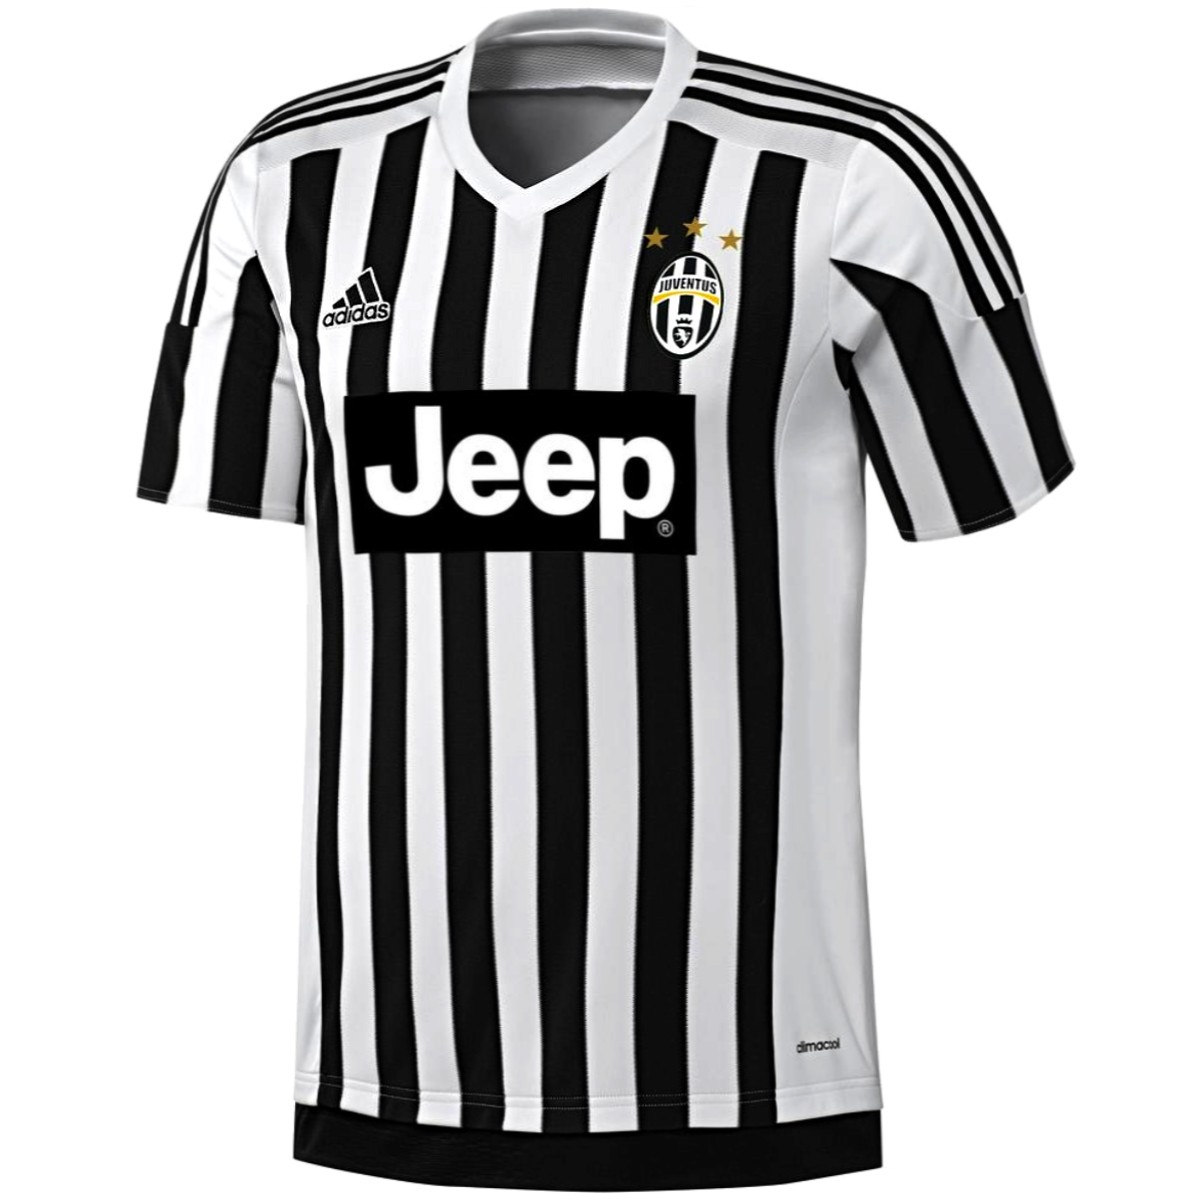 Juventus camiseta de fútbol 2015/16 - Adidas - SportingPlus - Passion for Sport